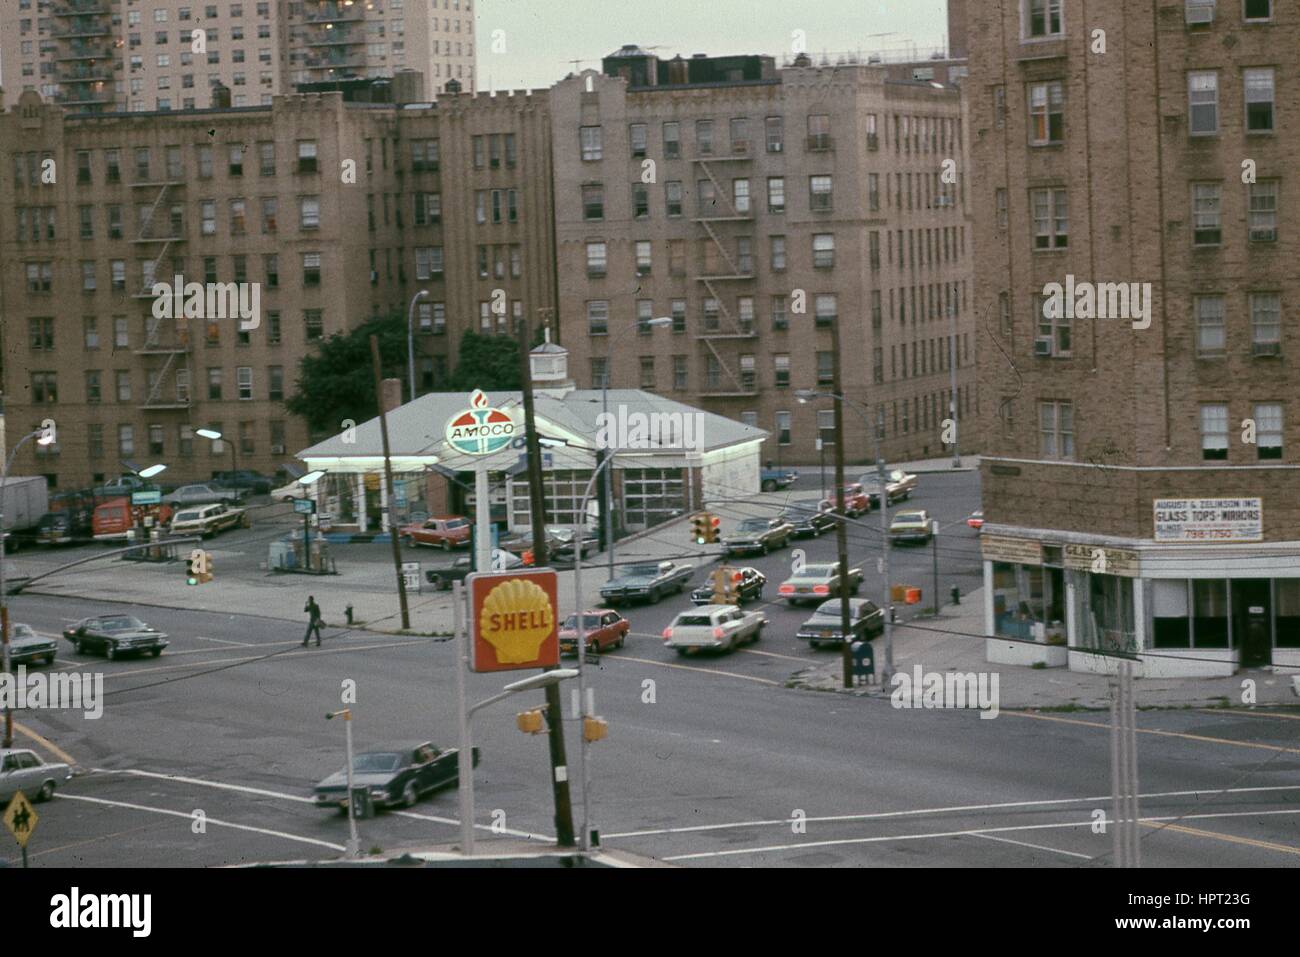 Macchine passano attraverso un incrocio vicino Amoco e Shell gas stazioni, con la vetrina di agosto e Zelkinson glass company visibile, nel Bronx, New York, New York, 1976. Foto Stock